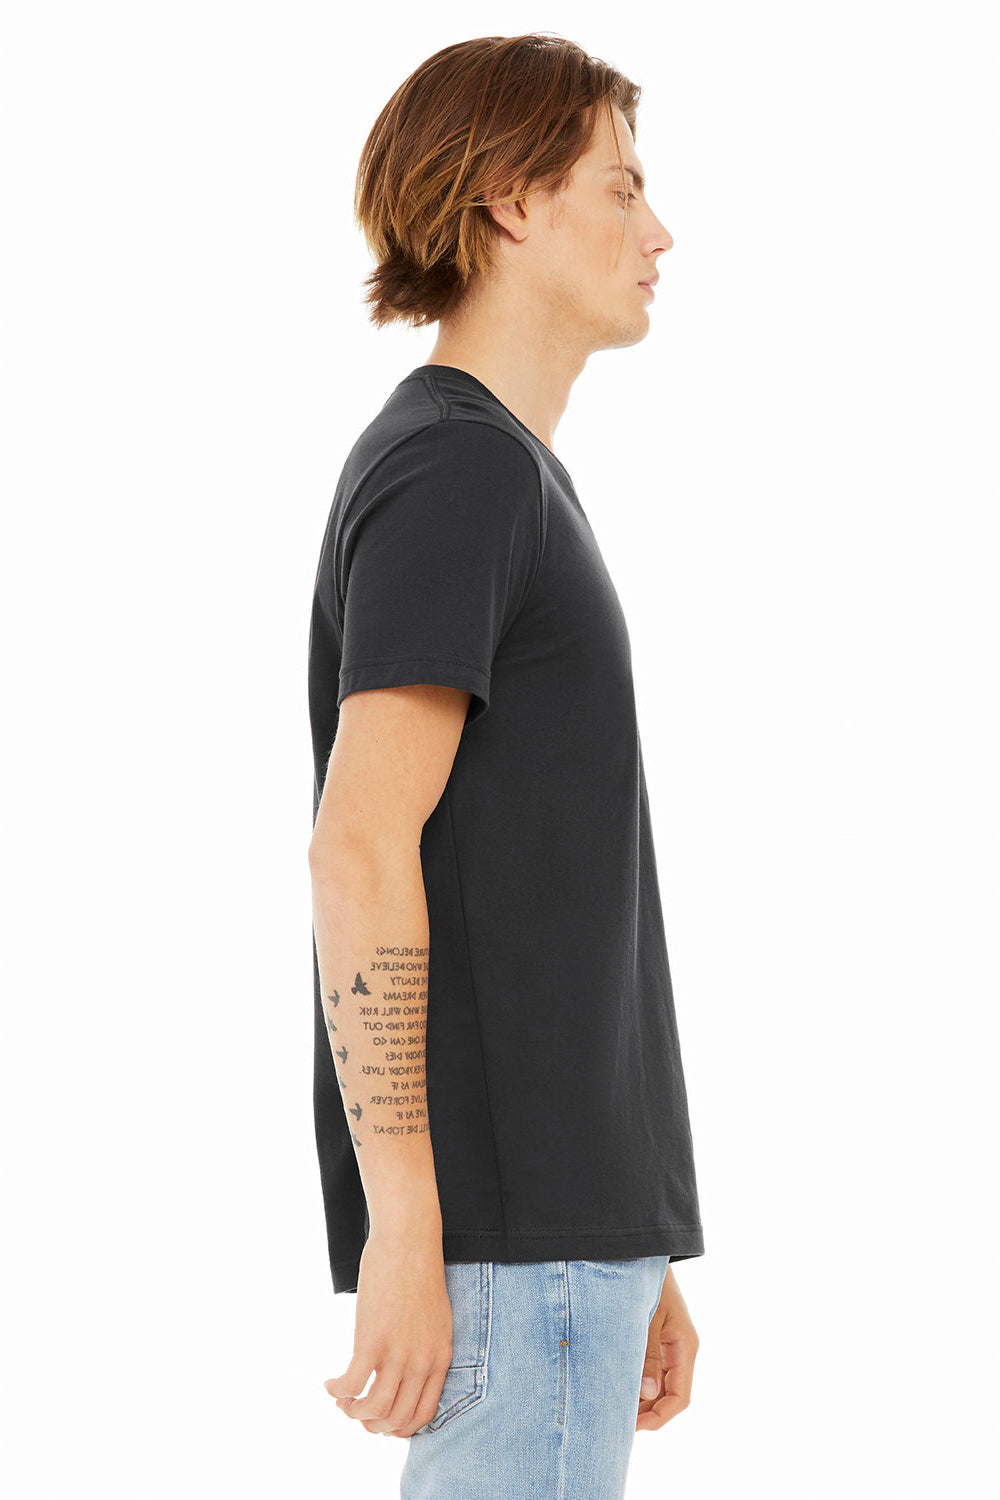 Bella + Canvas BC3005/3005/3655C Mens Jersey Short Sleeve V-Neck T-Shirt Dark Grey Model Side